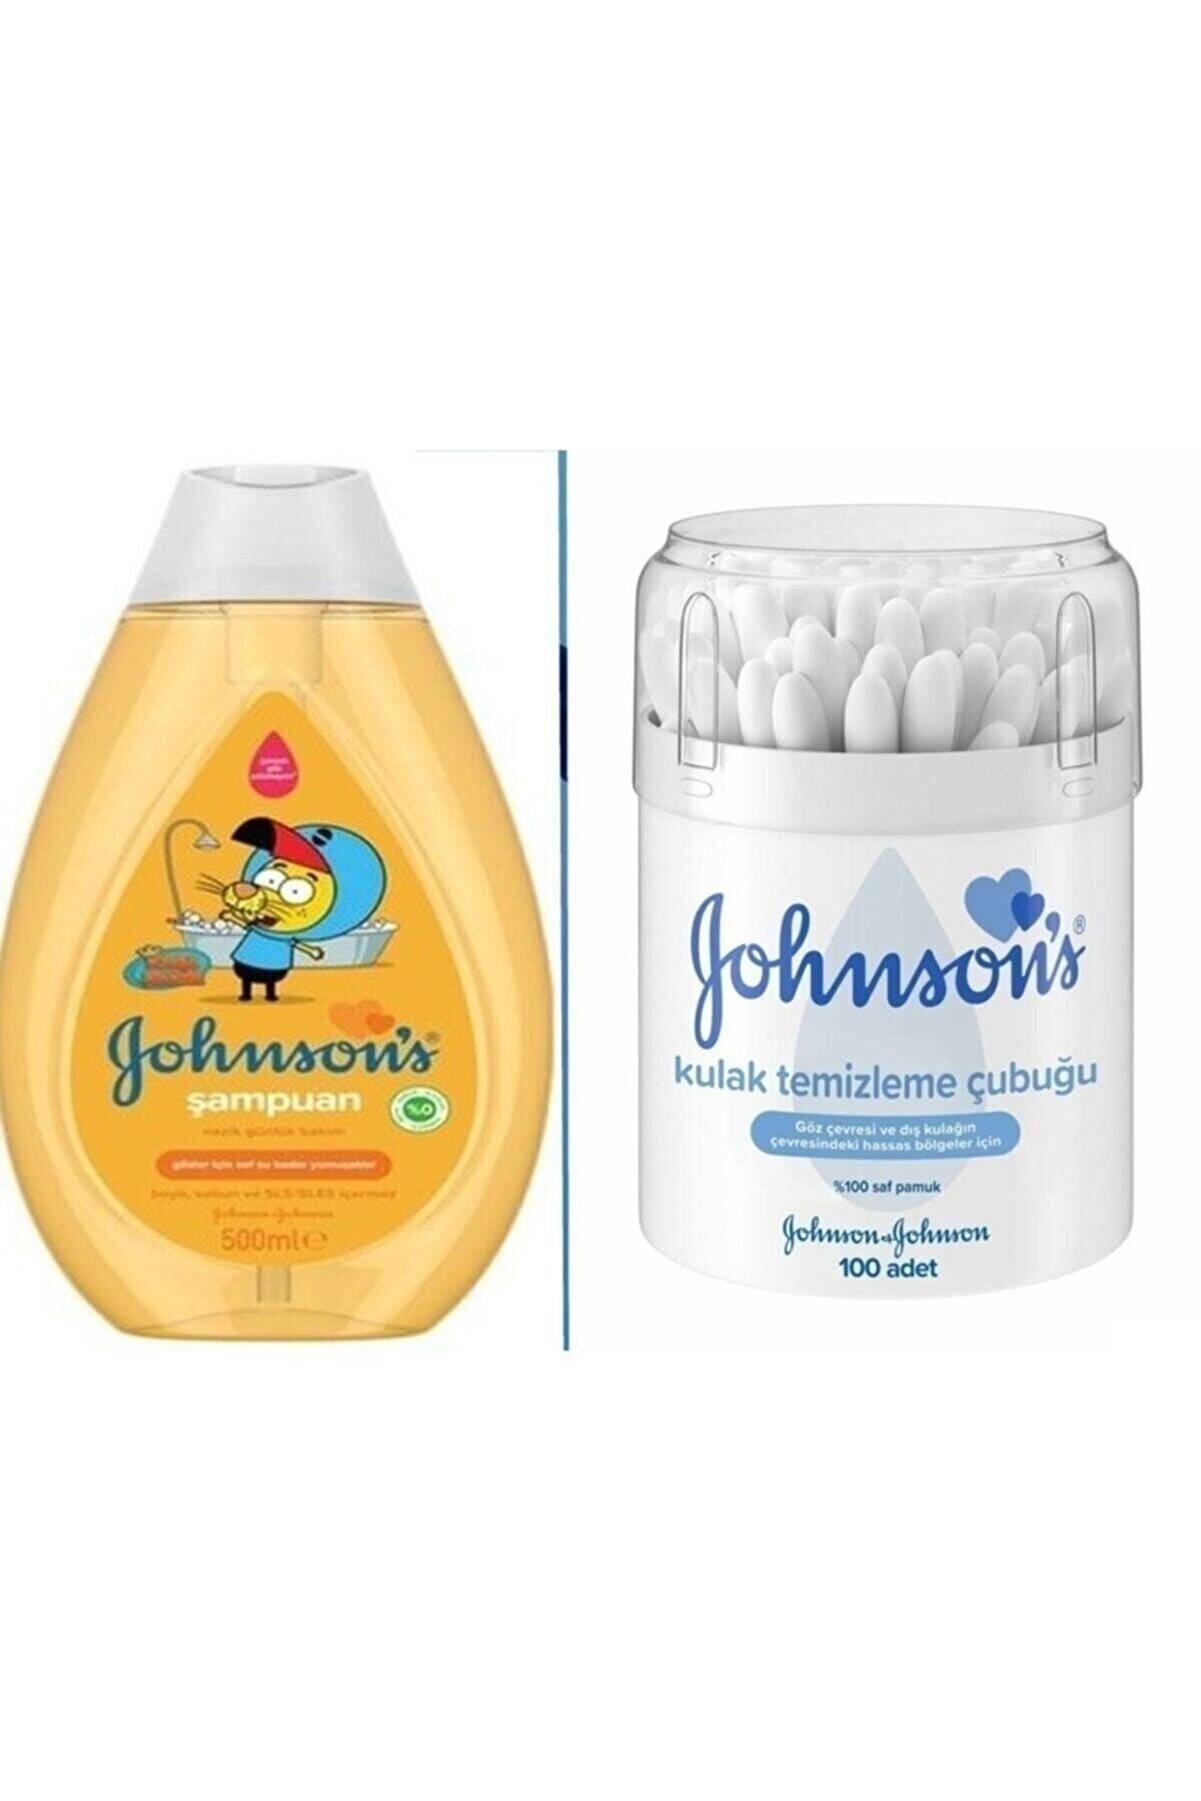 Johnson's Kral Şakir Bebek Şampuanı 500 ml Kulak Temizleme Çubuğu 100 Adet